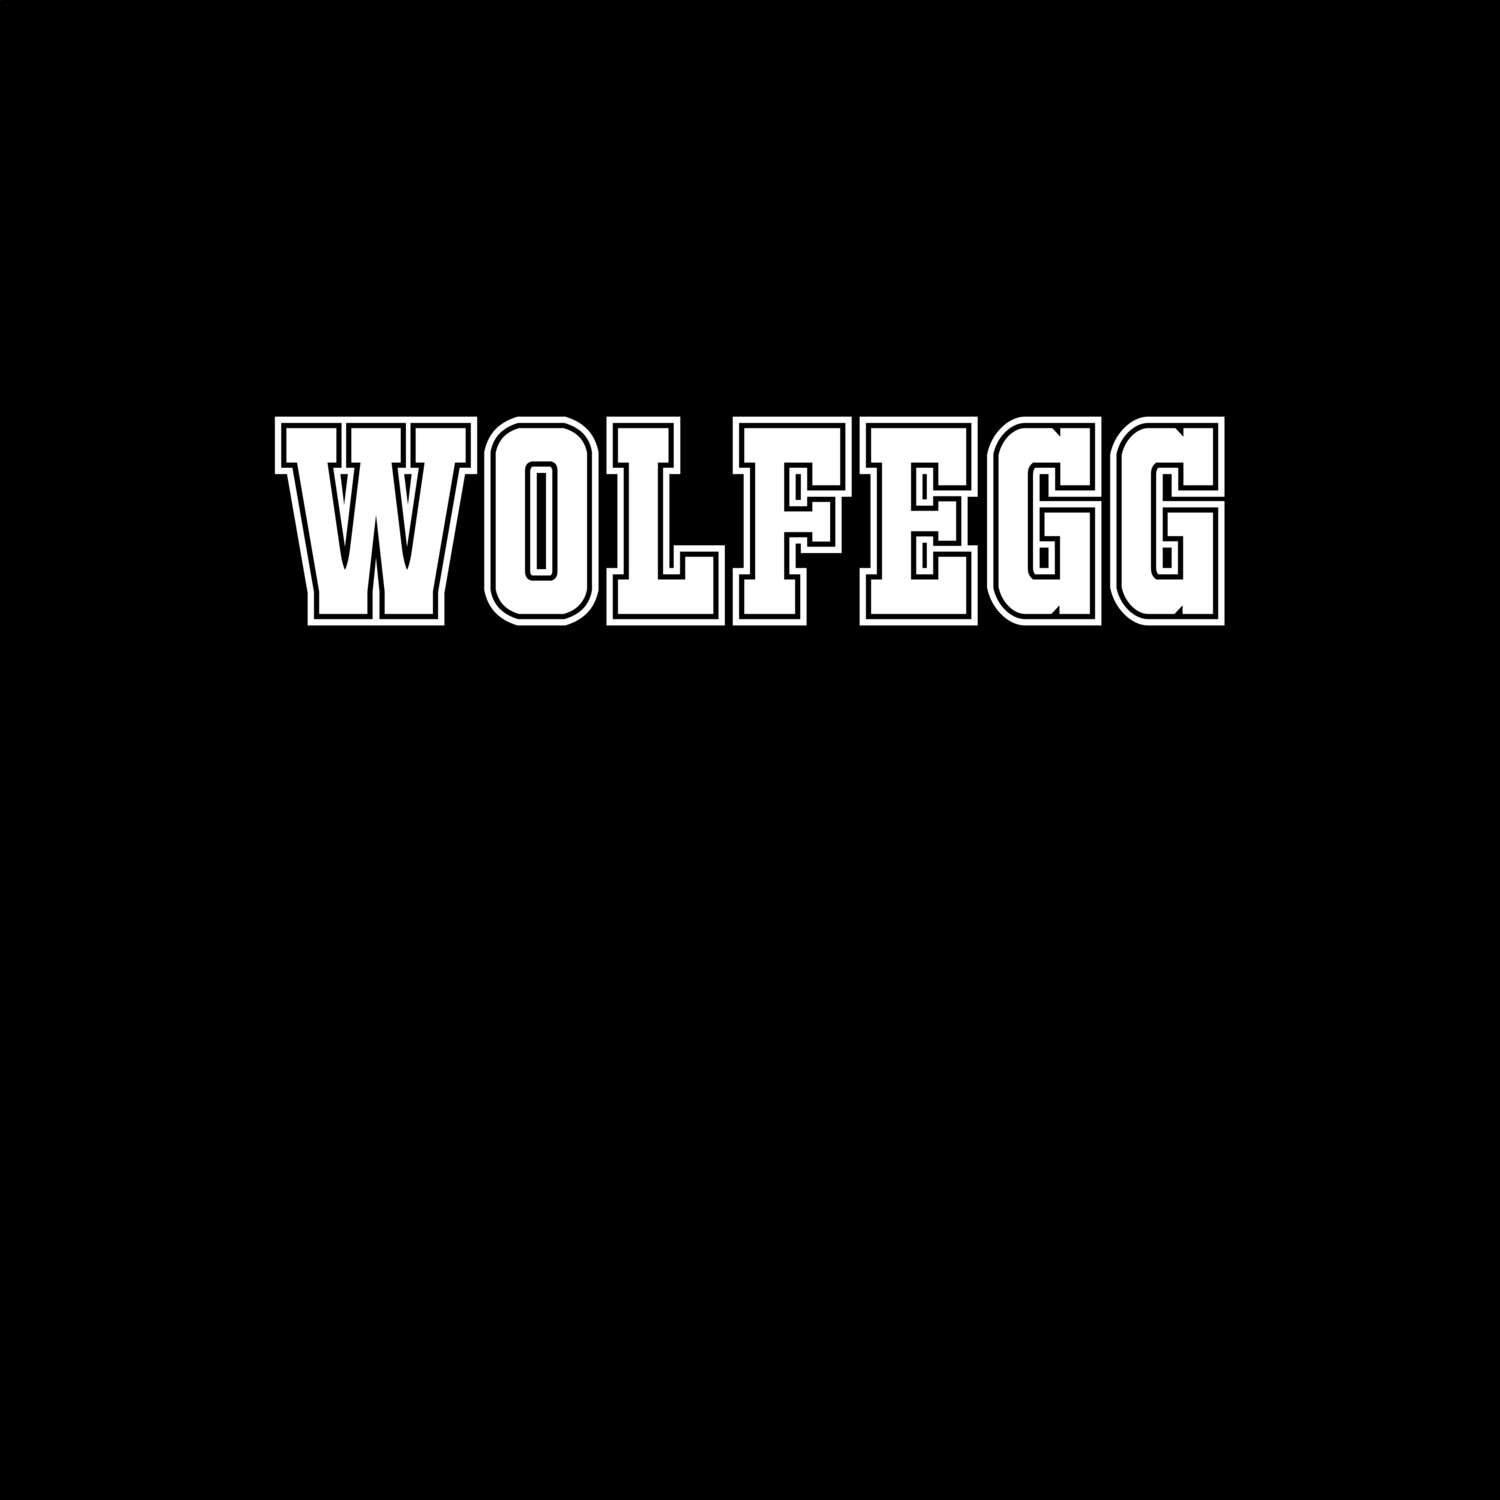 Wolfegg T-Shirt »Classic«